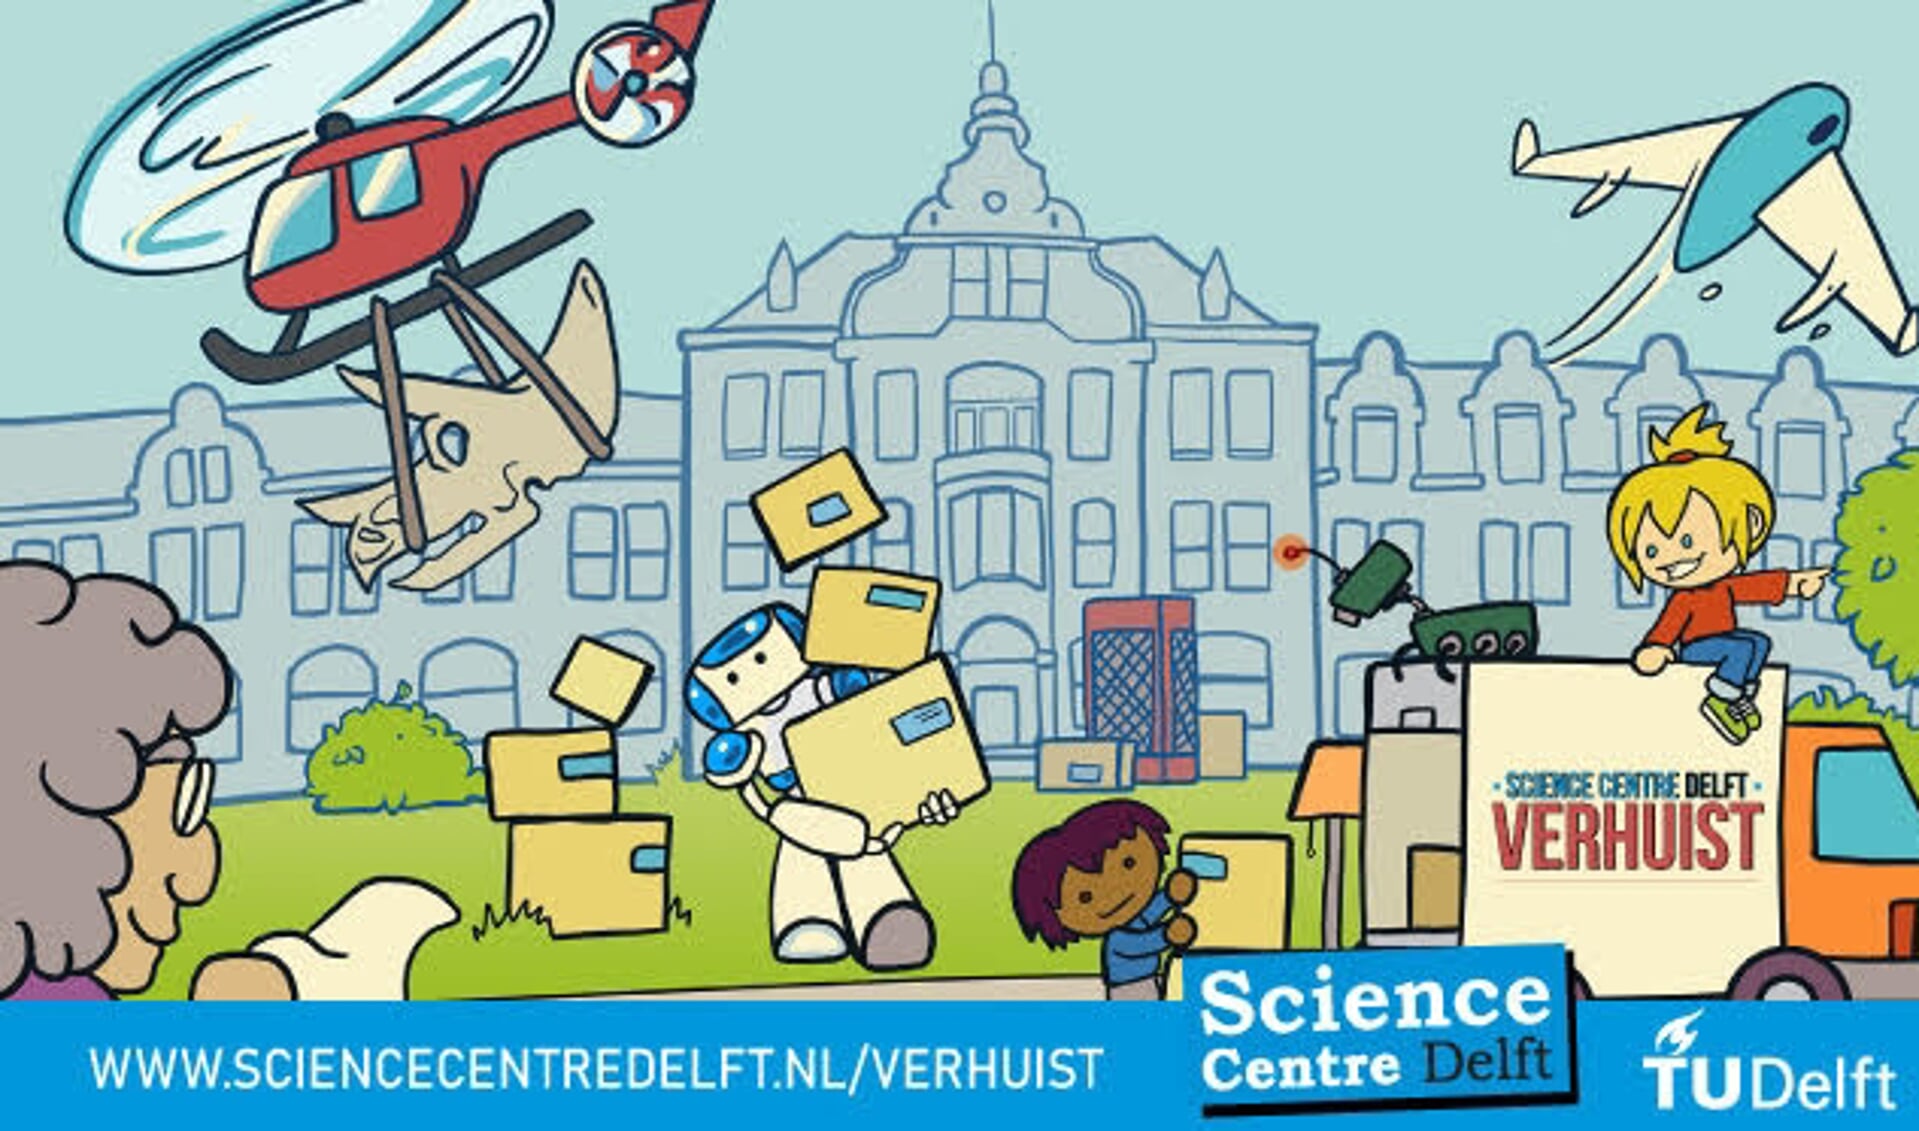 Wees er wel snel bij, want het Science Centre Delft verhuist!